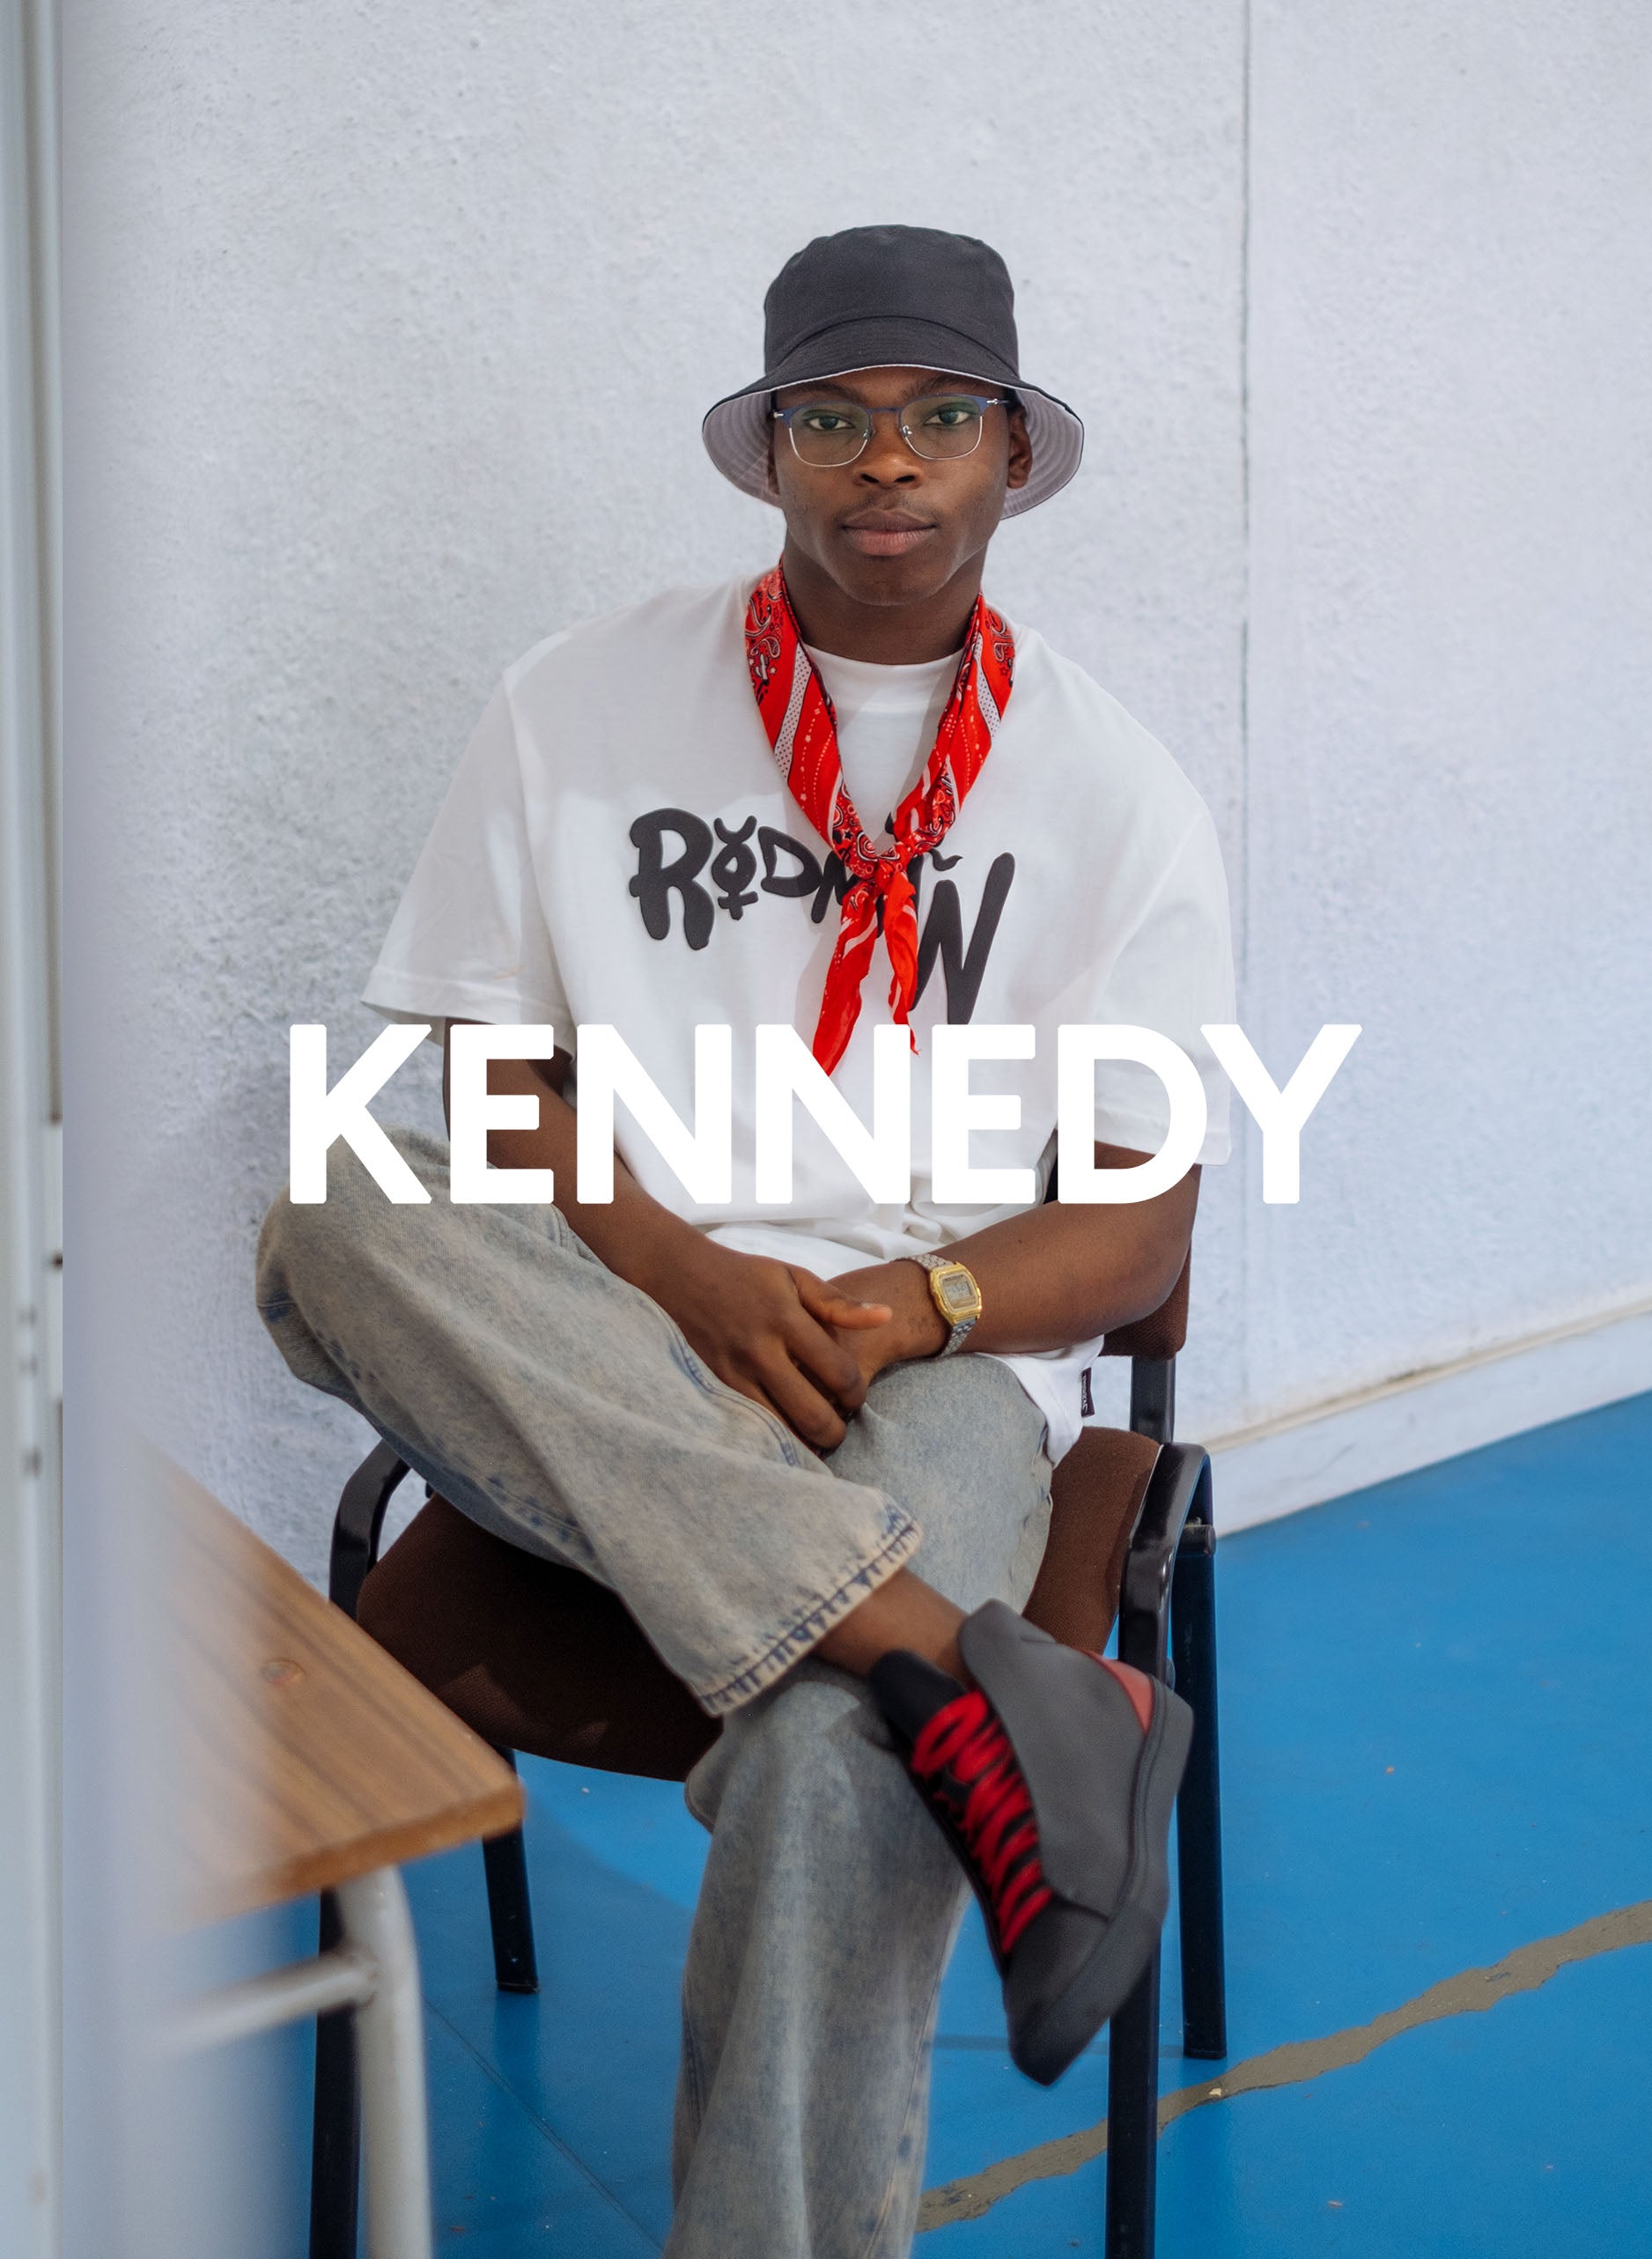 Kennedy assis sur une chaise, portant Diverge sneakers, mettant en valeur l’impact social et les chaussures personnalisées dans le cadre du projet Imagine.